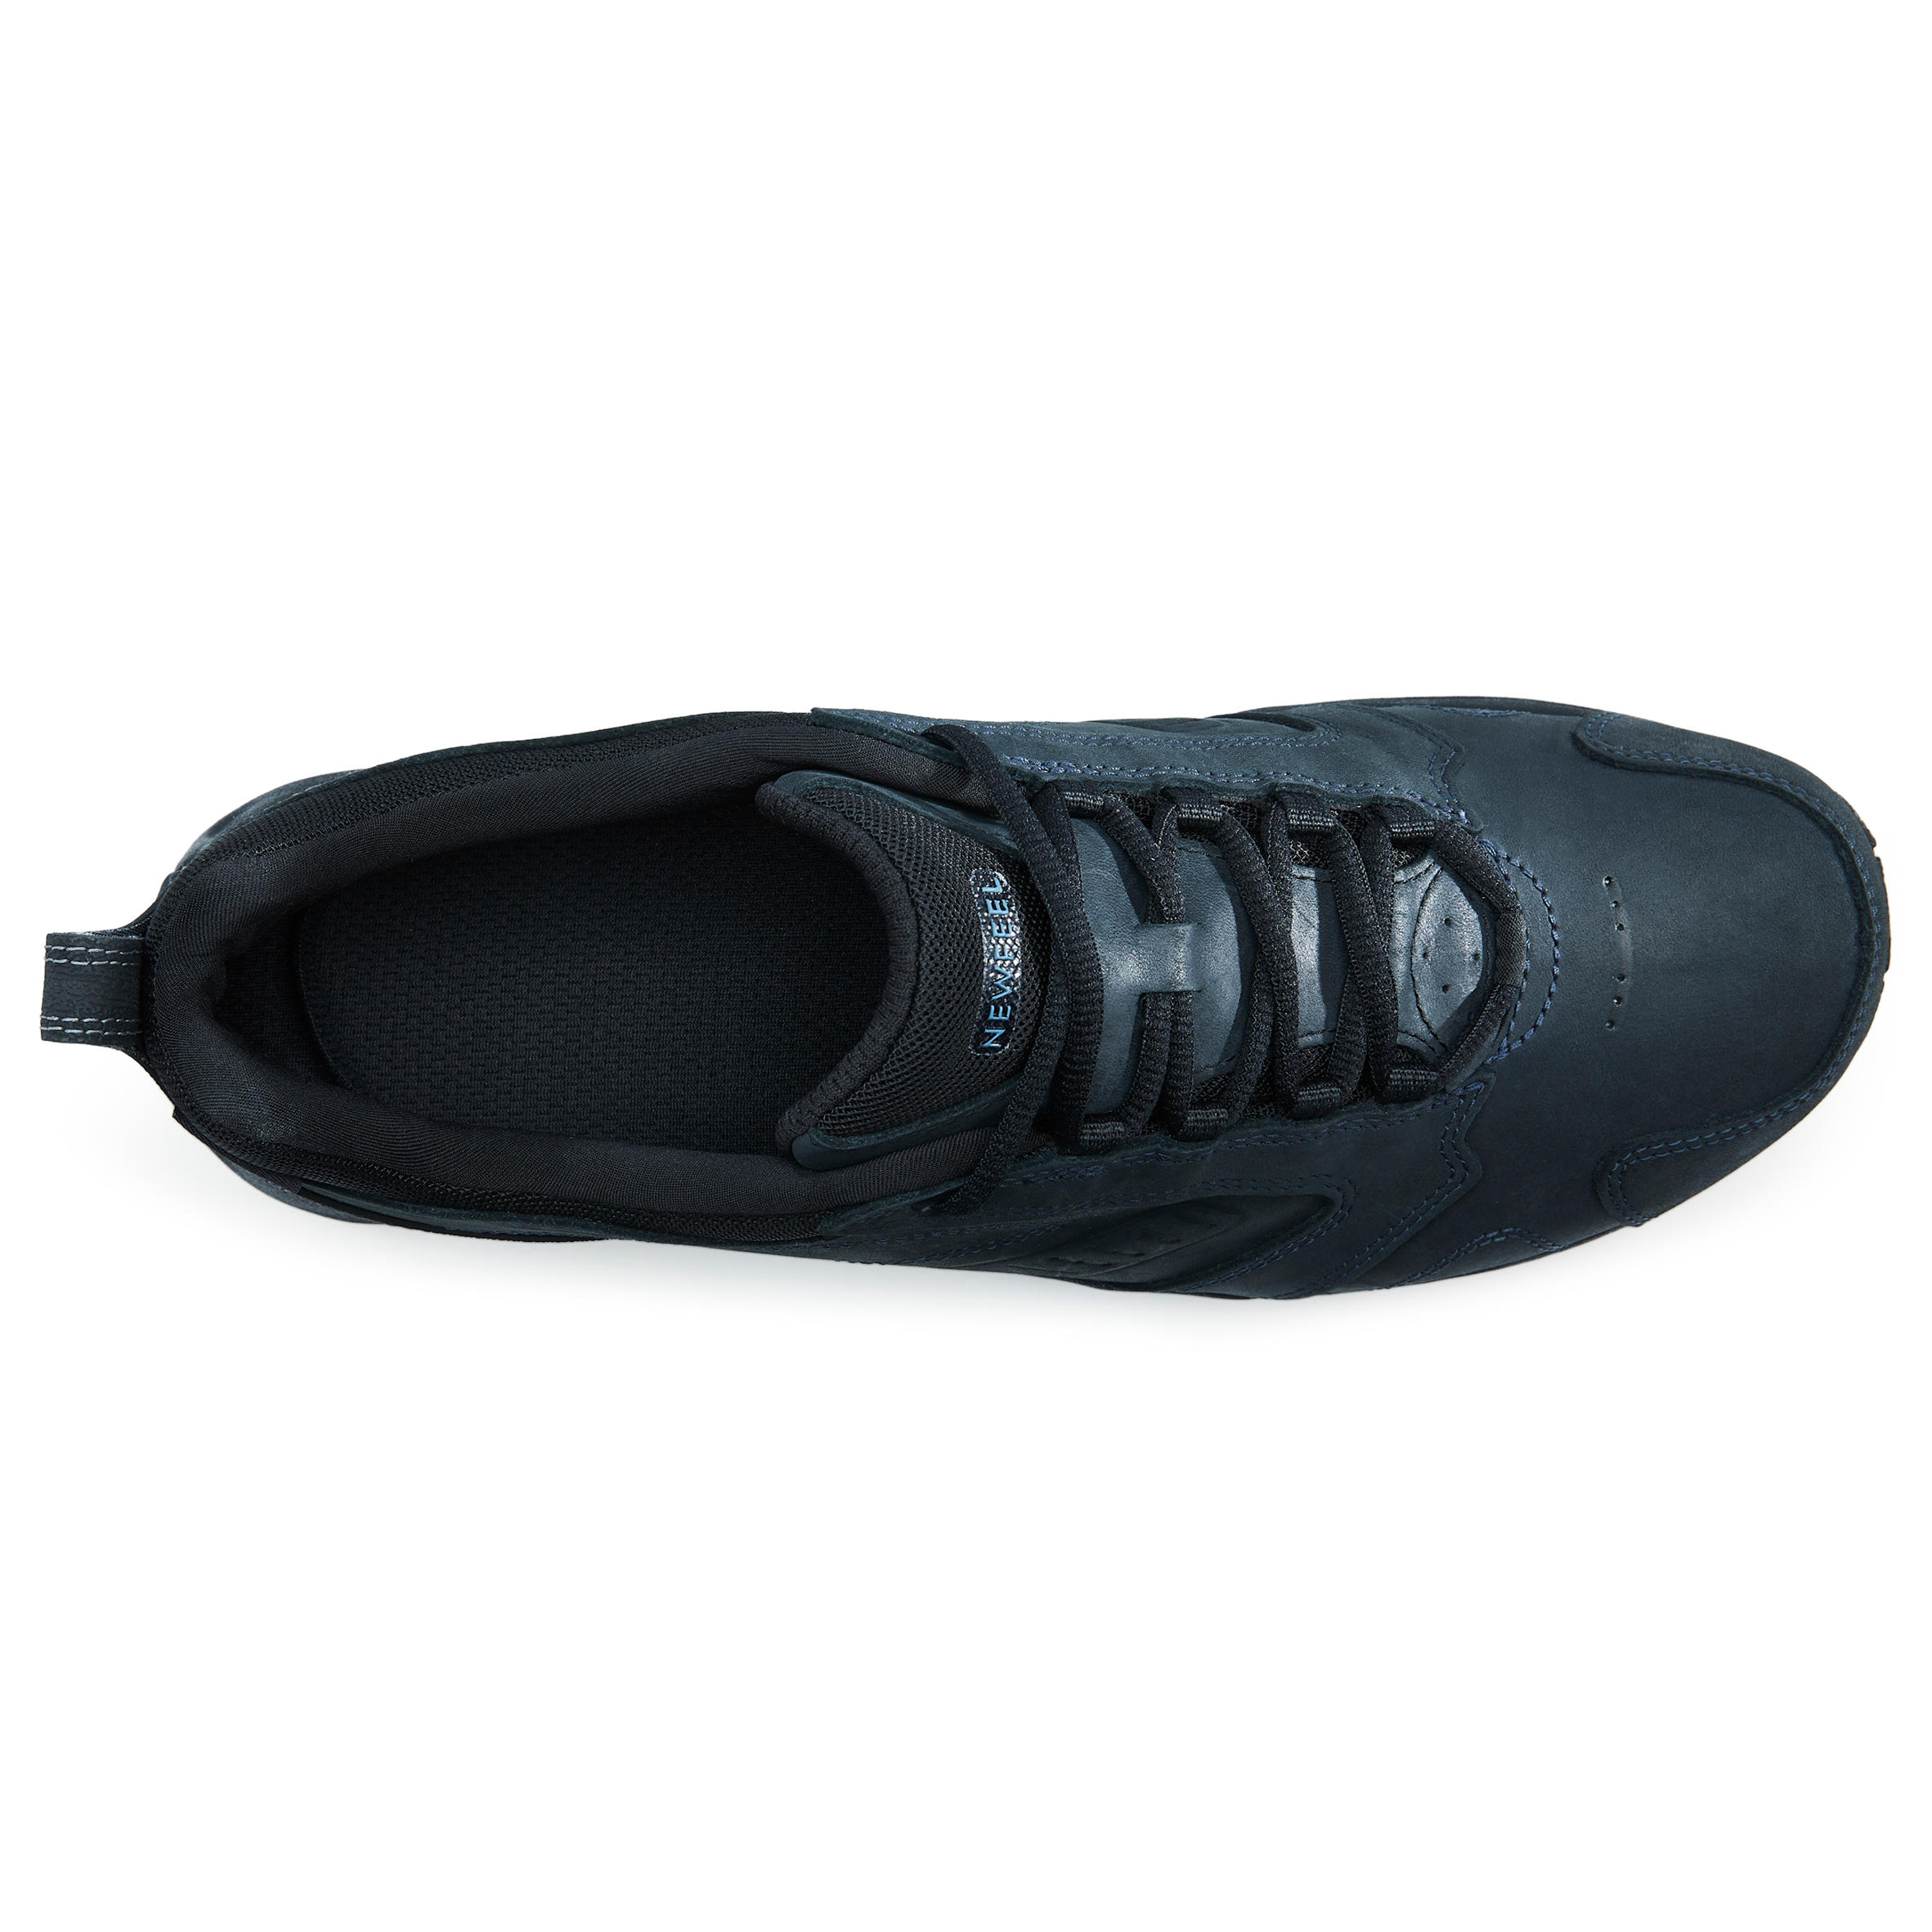 Nakuru Waterproof Men's Urban Waterproof Walking Shoes - Black Leather 18/25